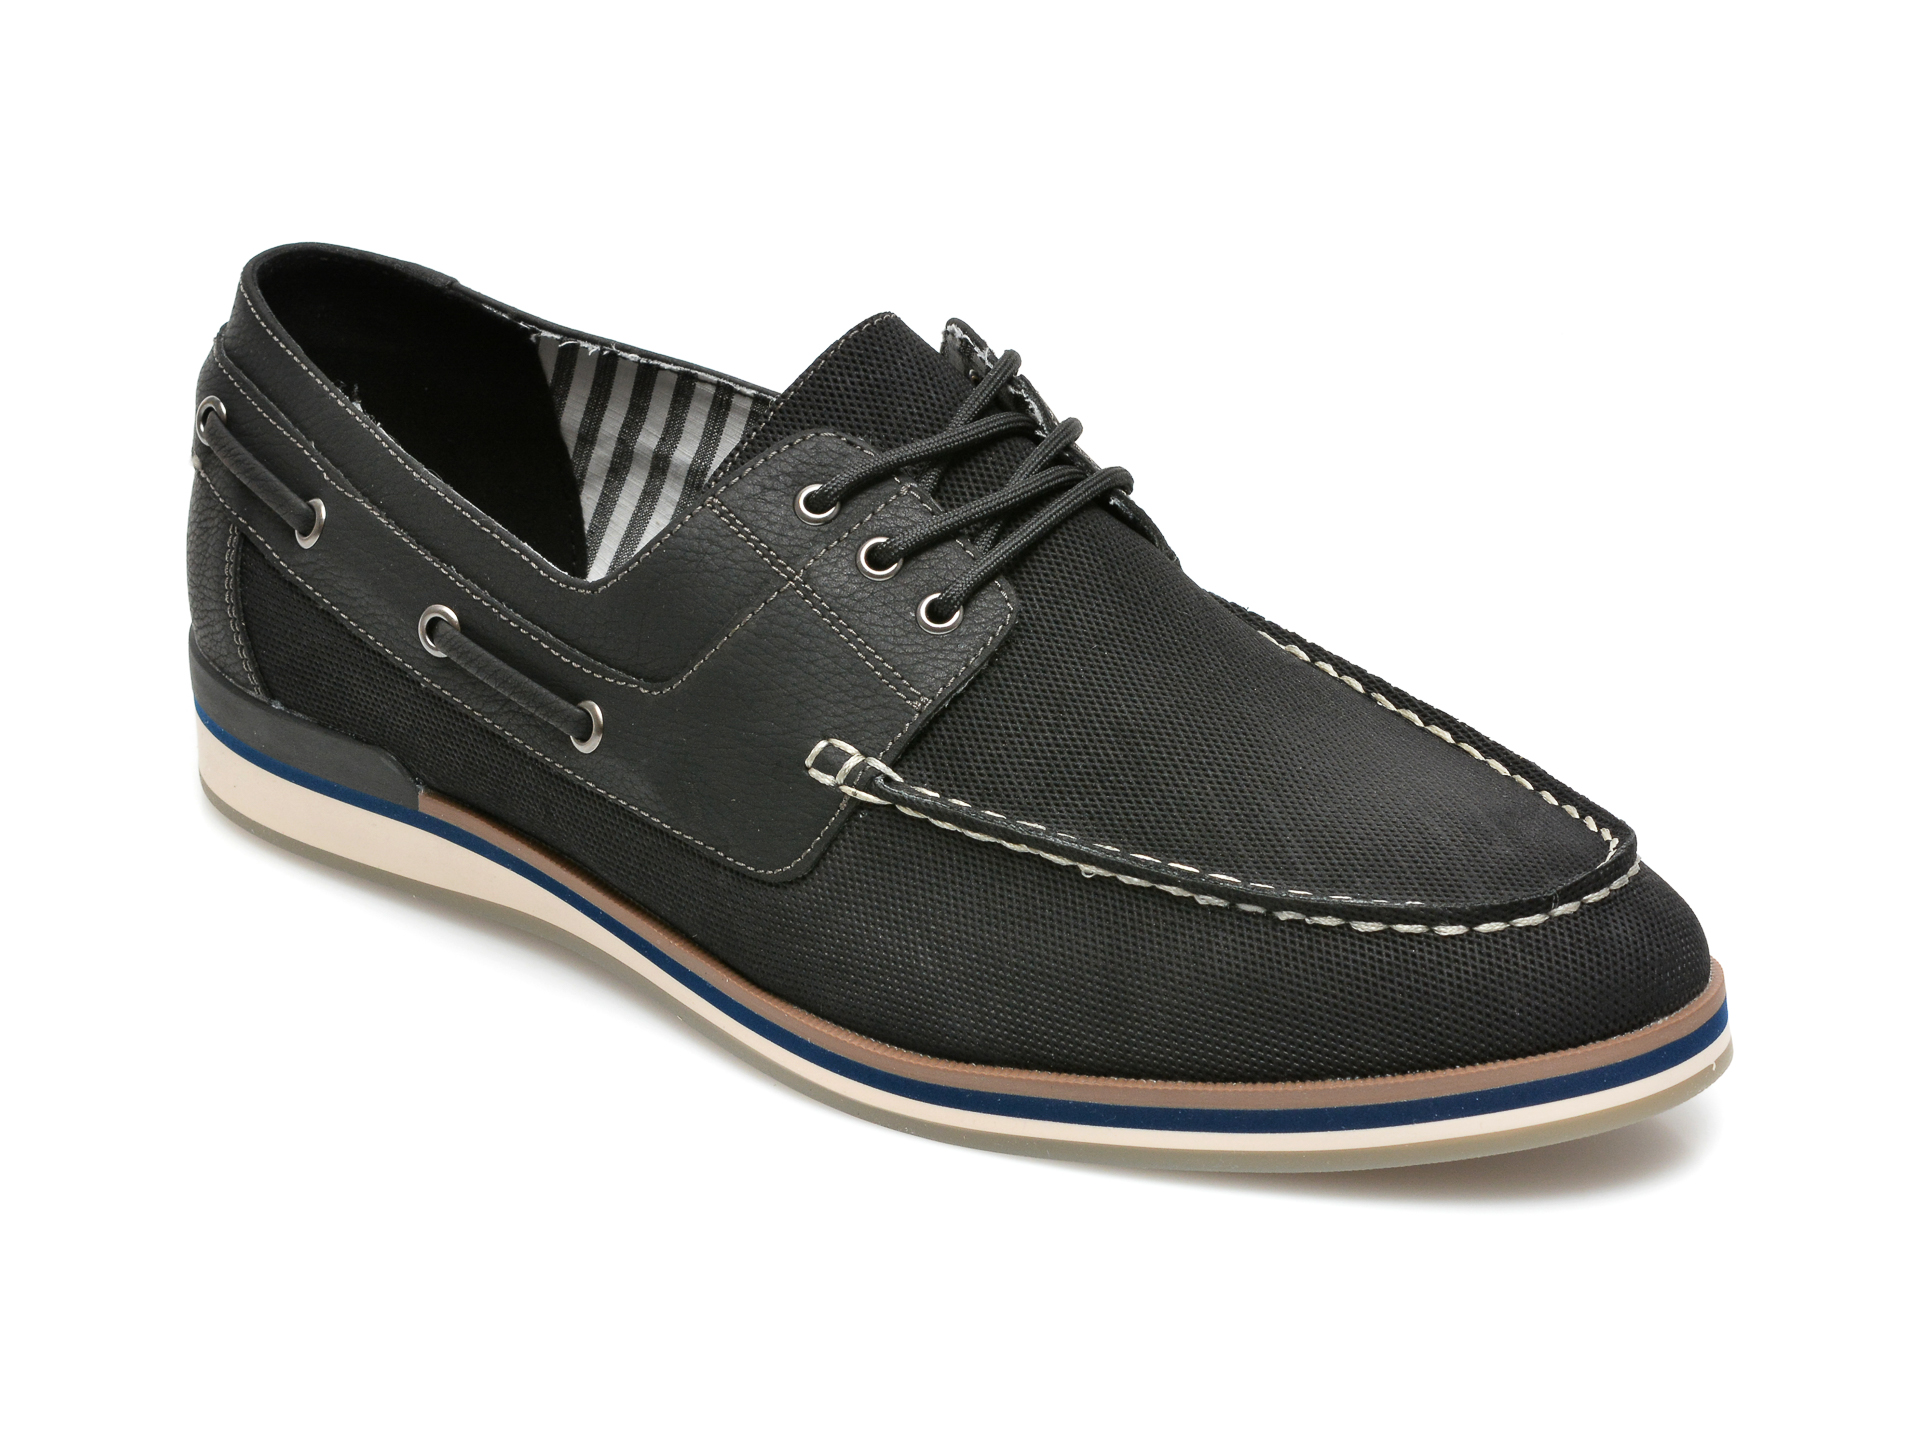 Pantofi ALDO negri, Bohor001, din piele ecologica Aldo